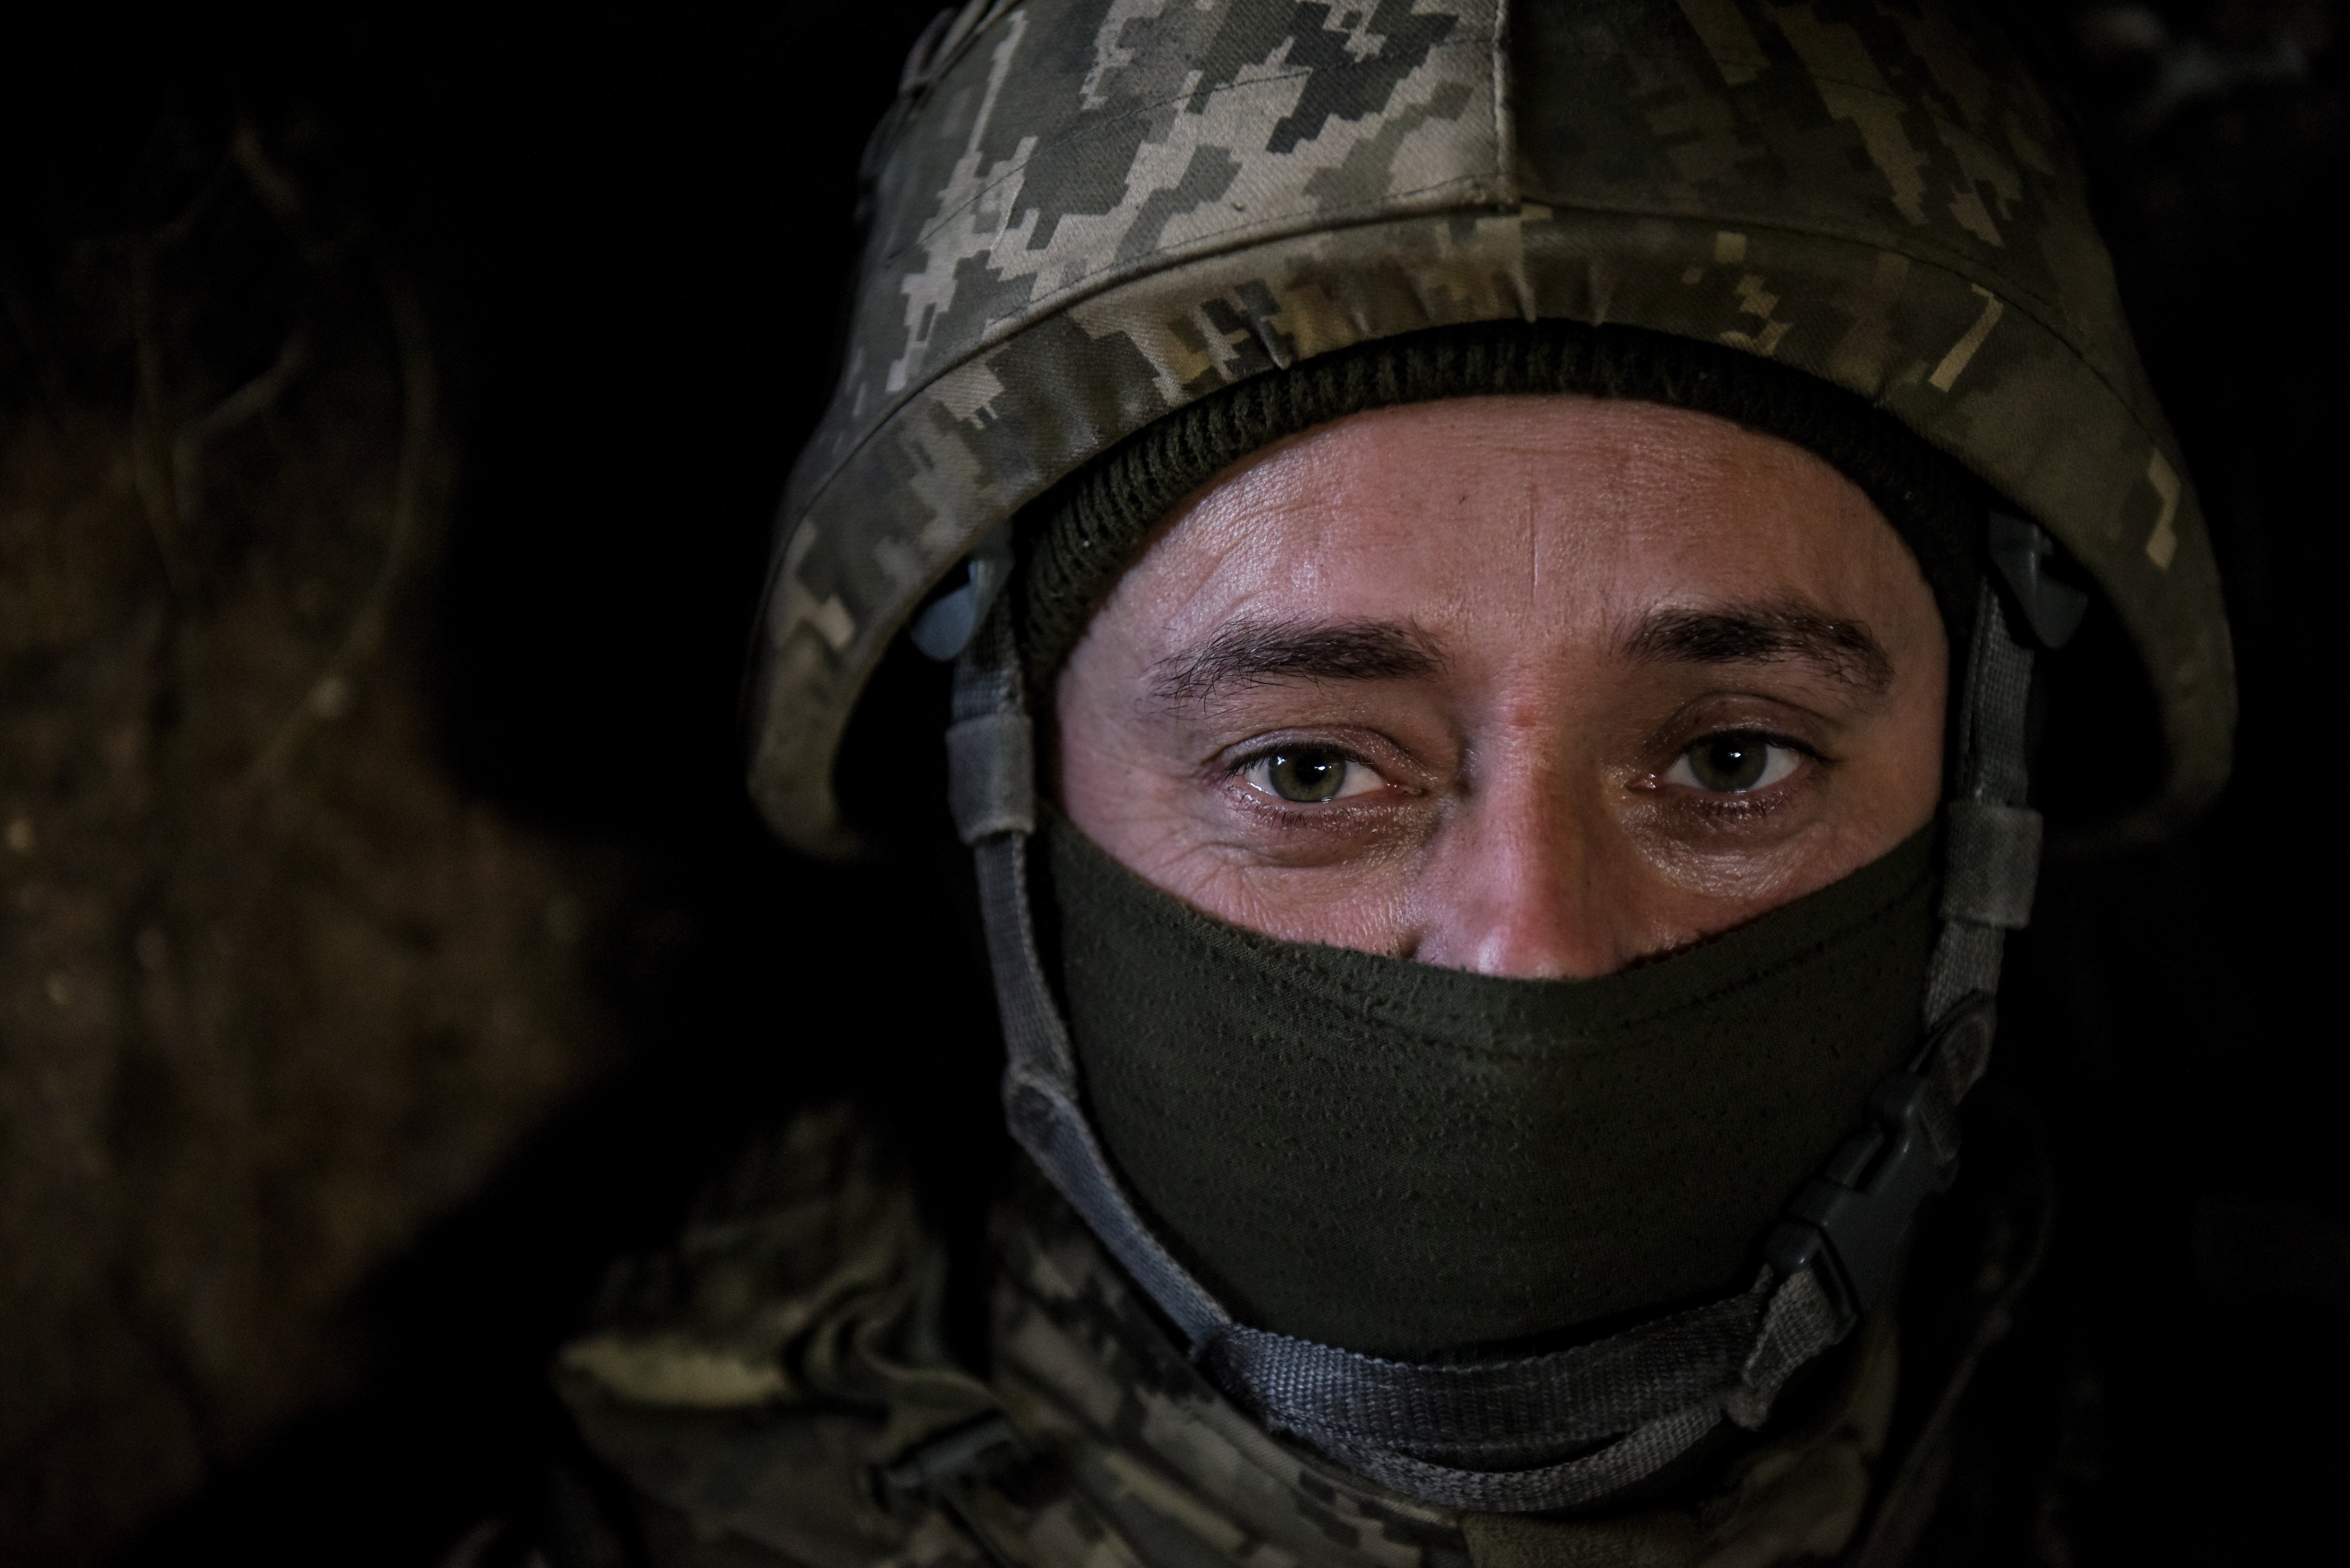 Nova campanya del Kremlin per reclutar homes per a la guerra d'Ucraïna: "Sigues un home"